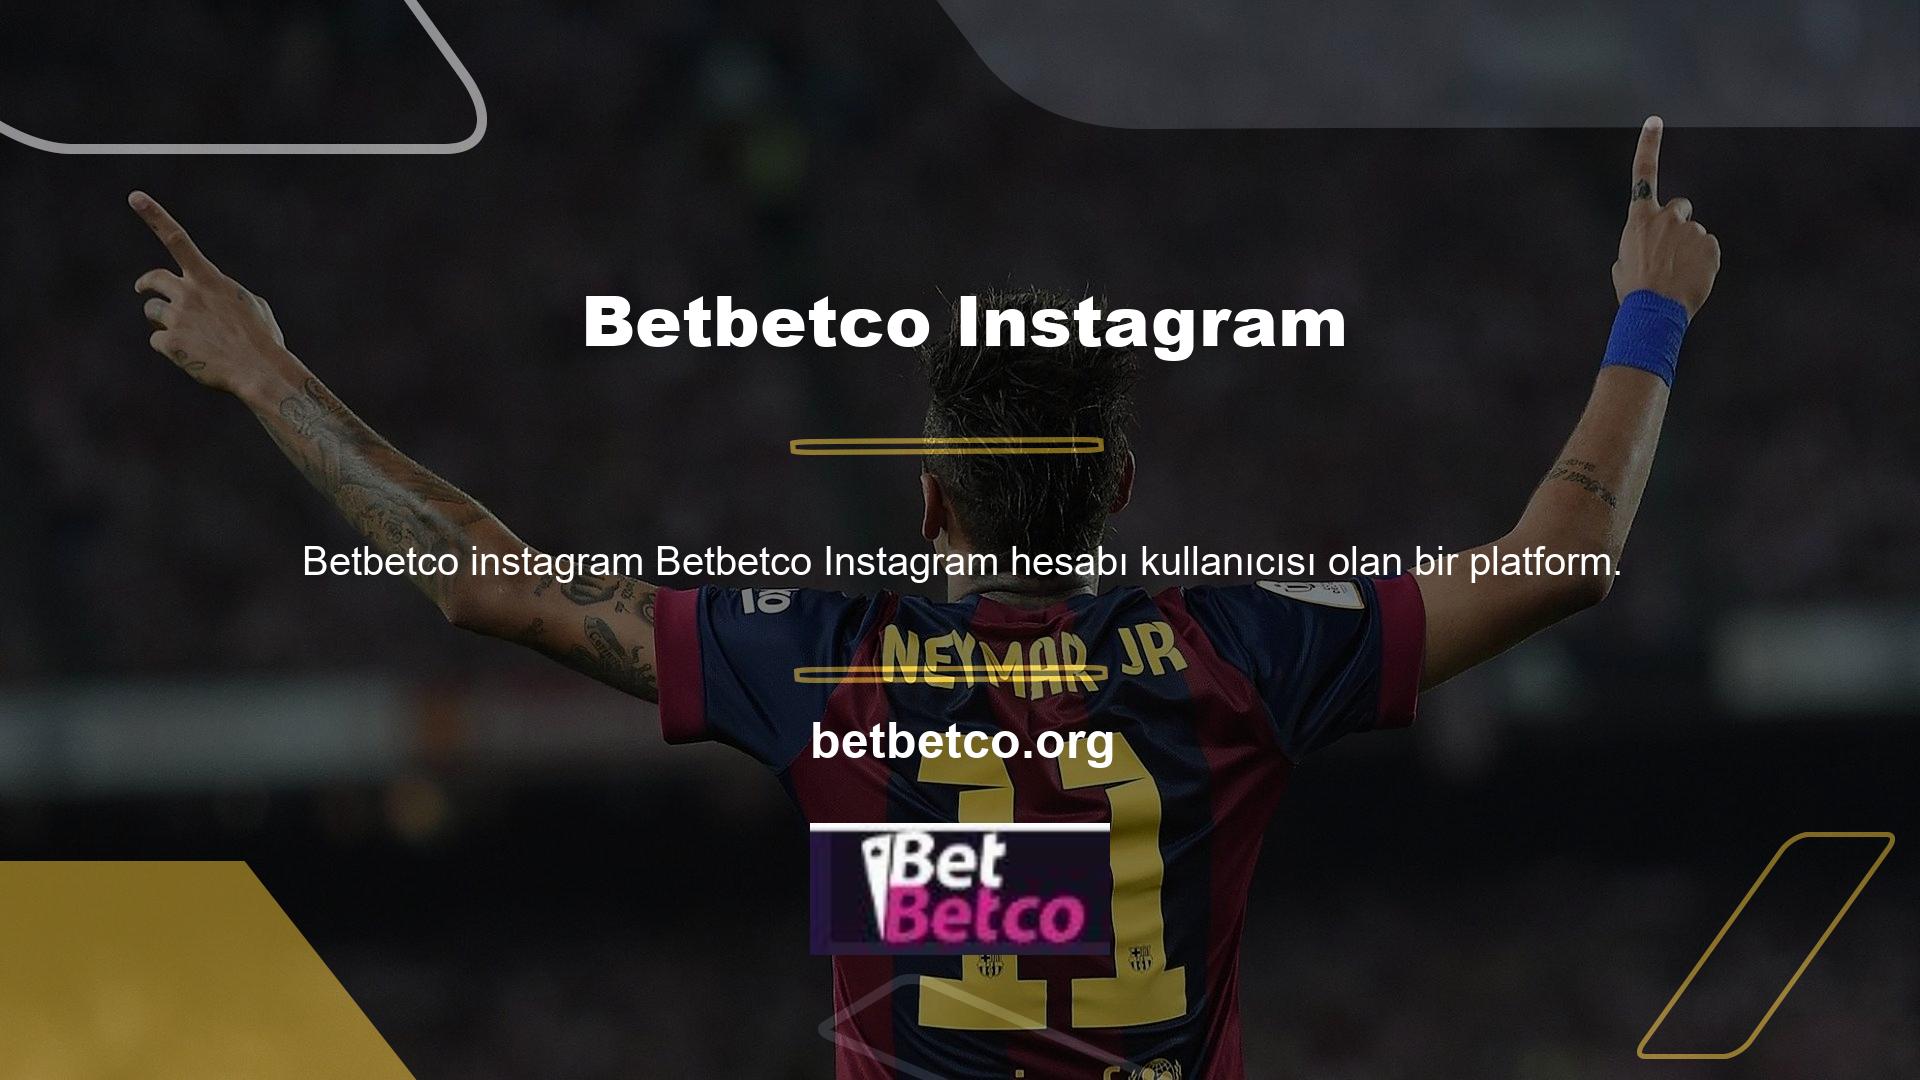 Son dönemde artan Instagram kullanıcıları sayesinde Betbetco, kullanıcılarına iletişim kurmanın en kolay yolunu sunuyor